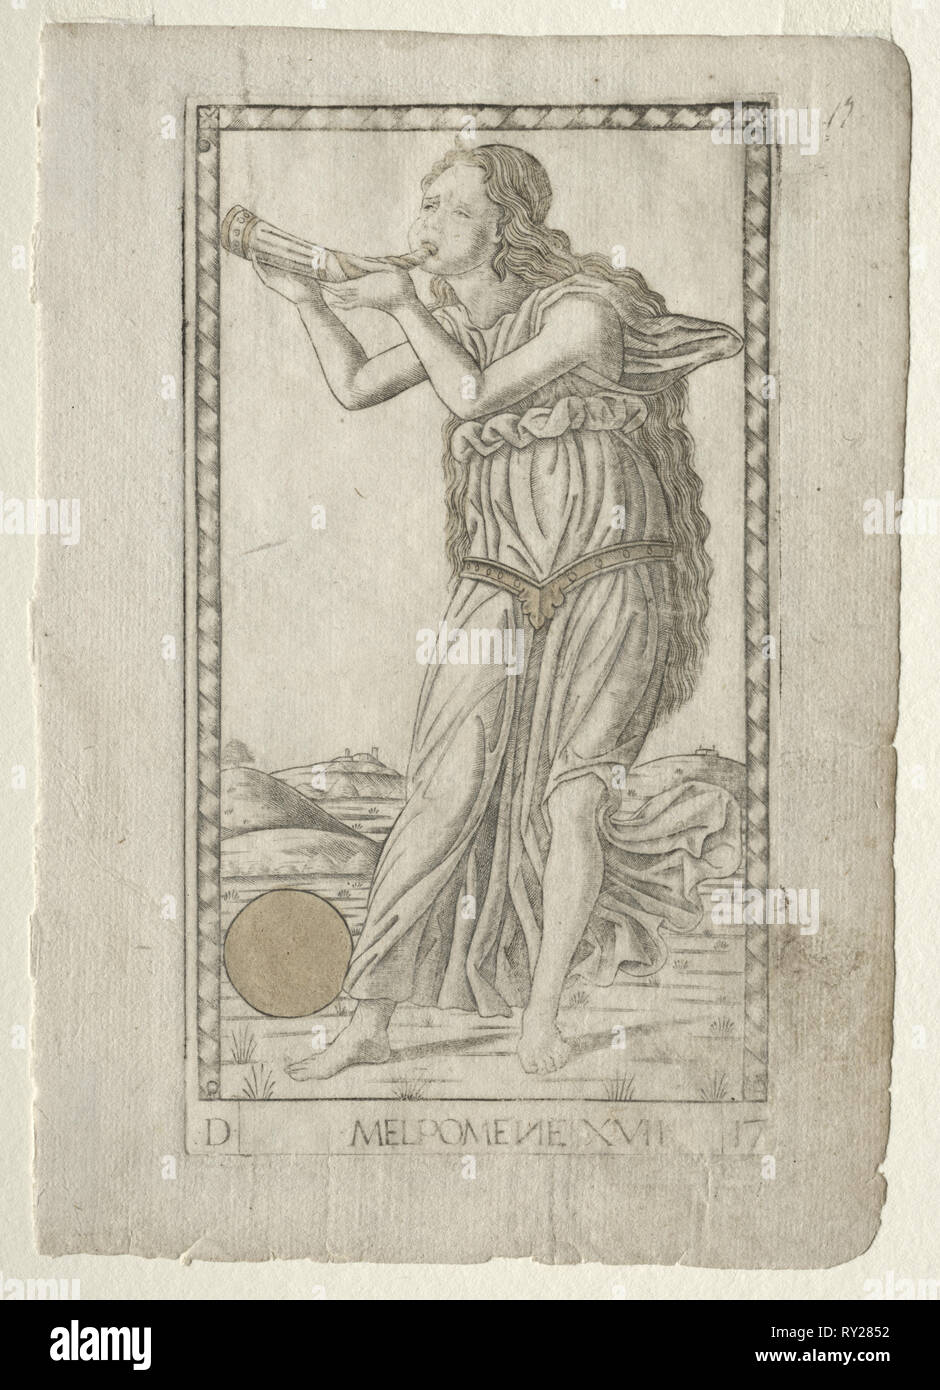 Melpomene (Tragödie) (Aus dem tarocchi Serie D: Apollo und die Musen, #17), vor 1467. Meister der E-Serie - Tarocchi (italienisch, 15. Jahrhundert). Gravur von Hand gefärbt mit Gold Stockfoto